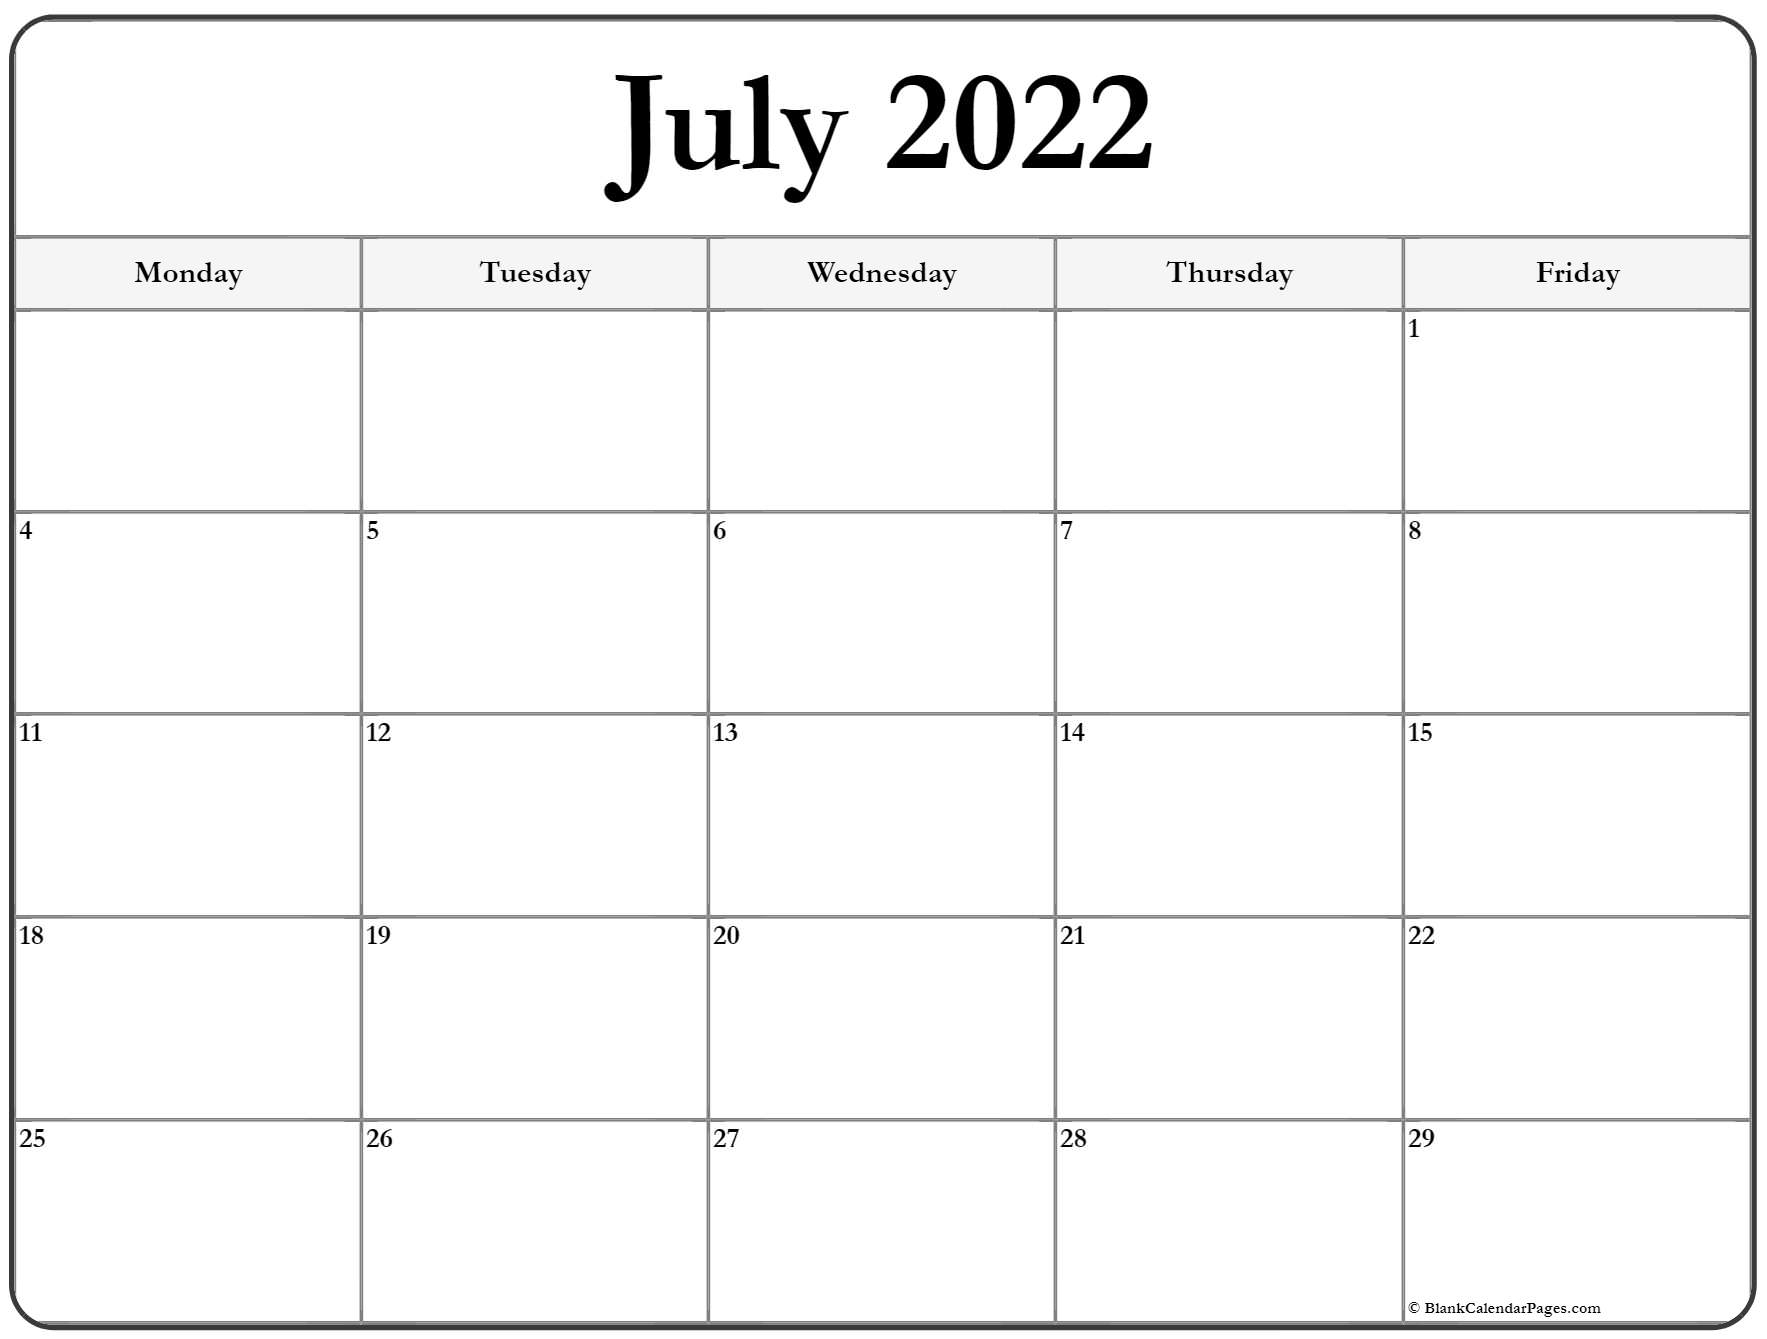 July 2022 Monday Calendar | Monday To Sunday